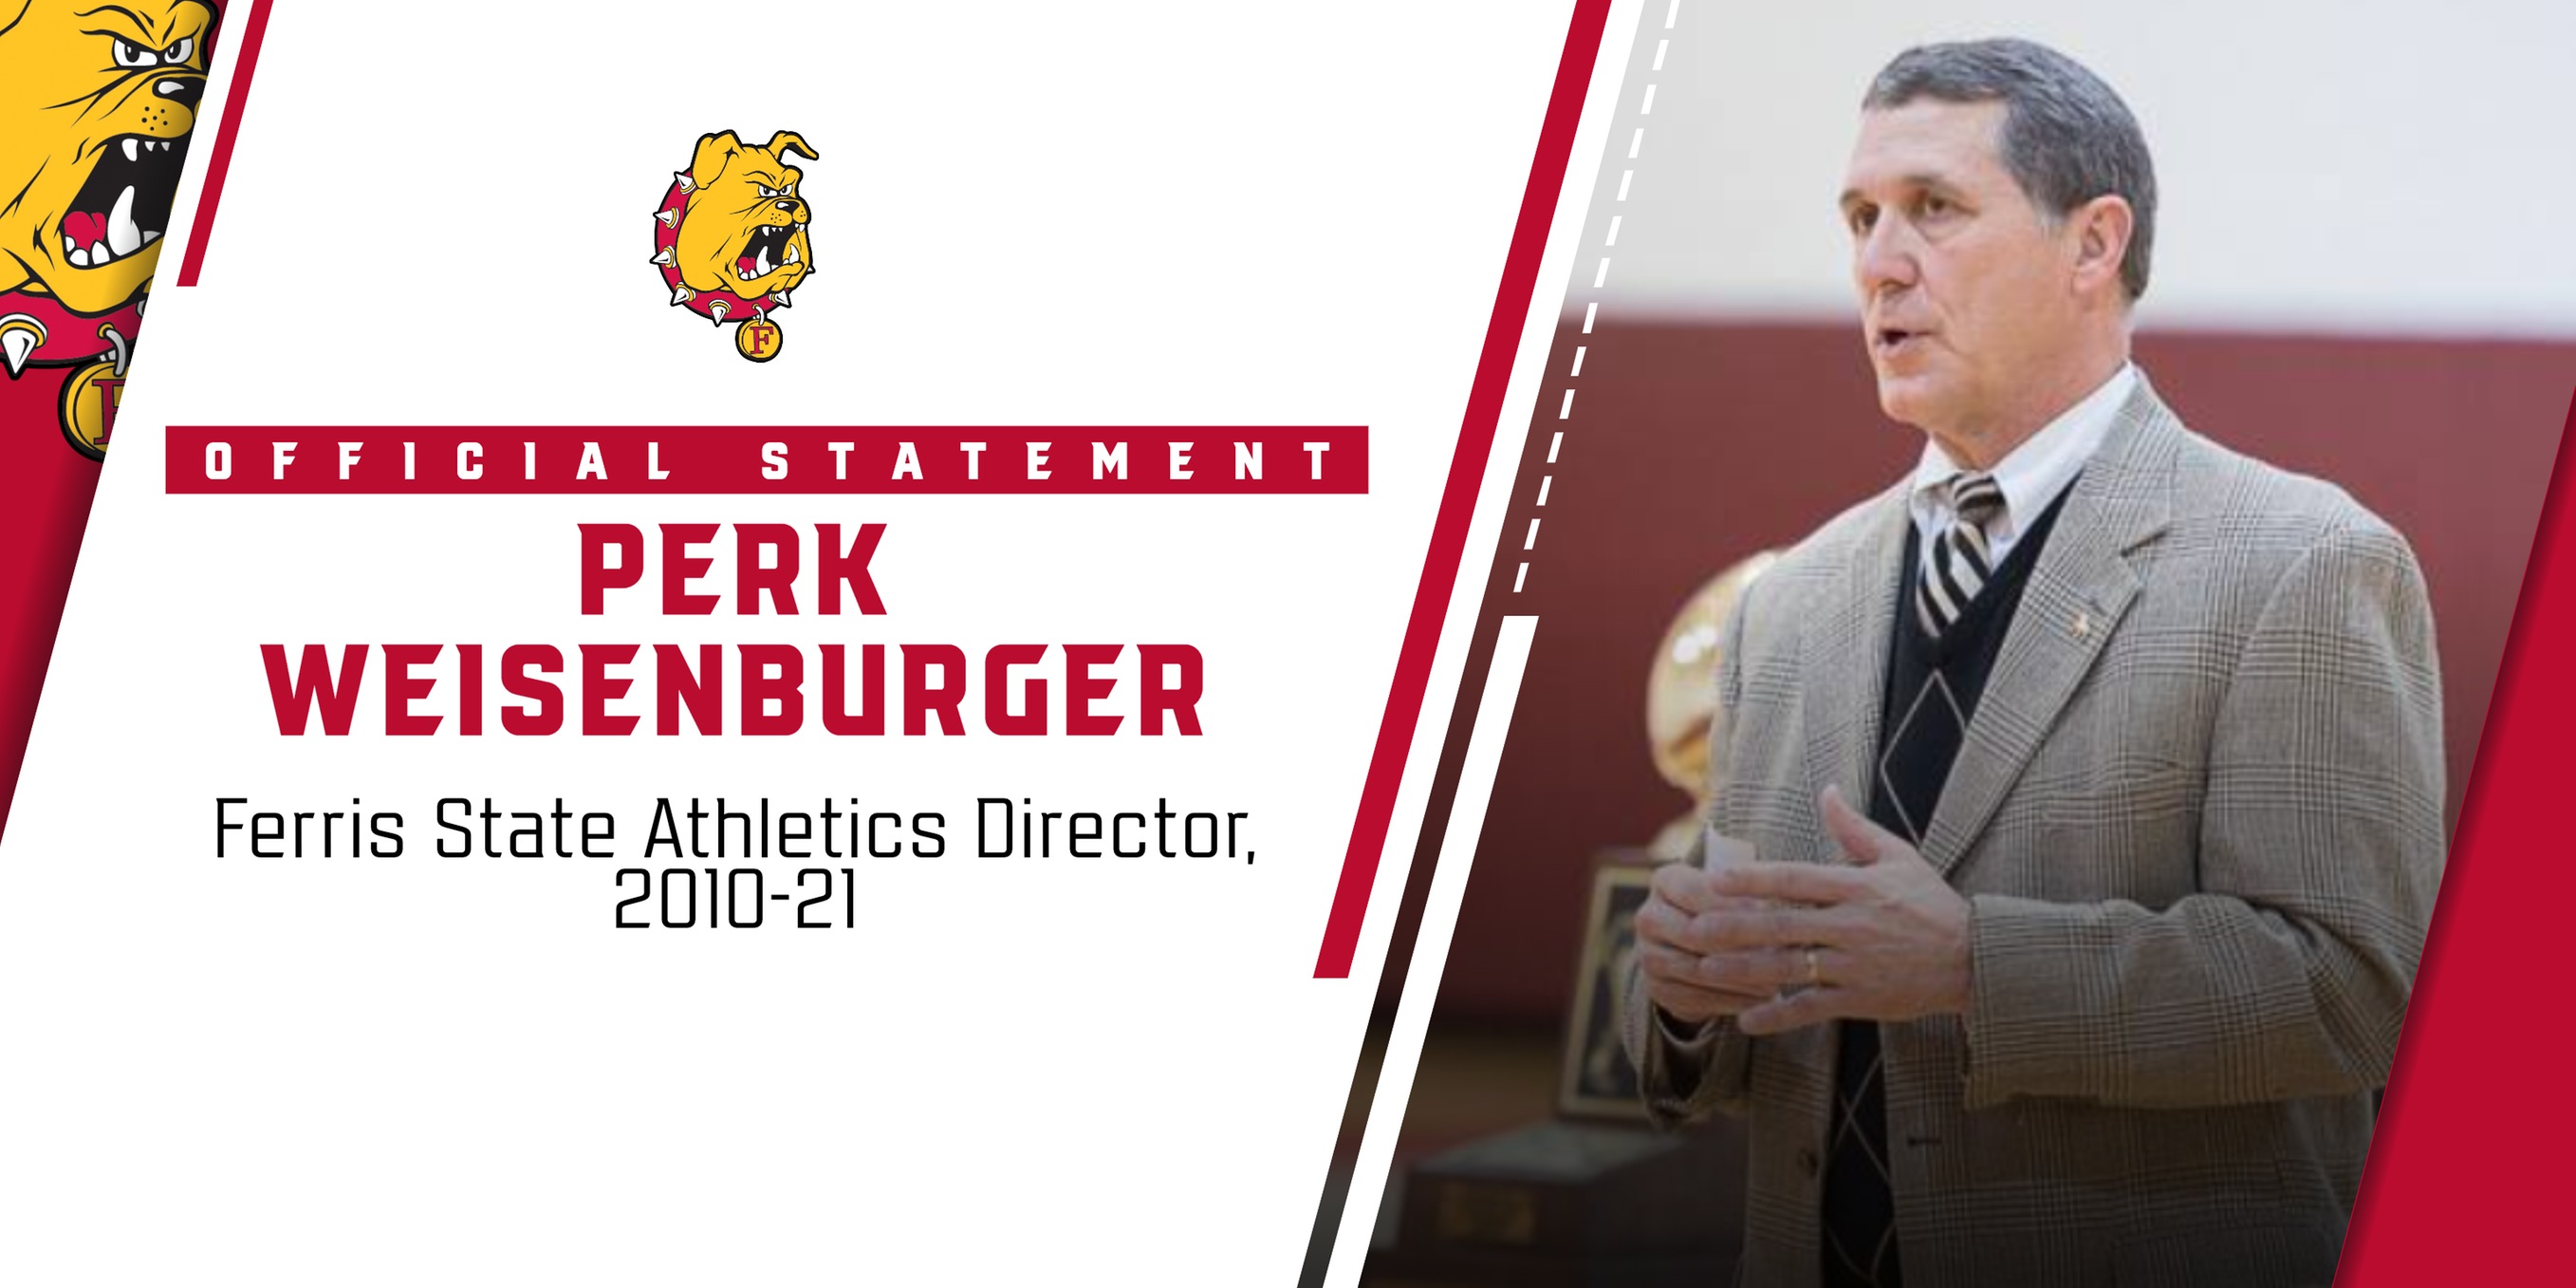 Statement From Ferris State Athletics Director Perk Weisenburger